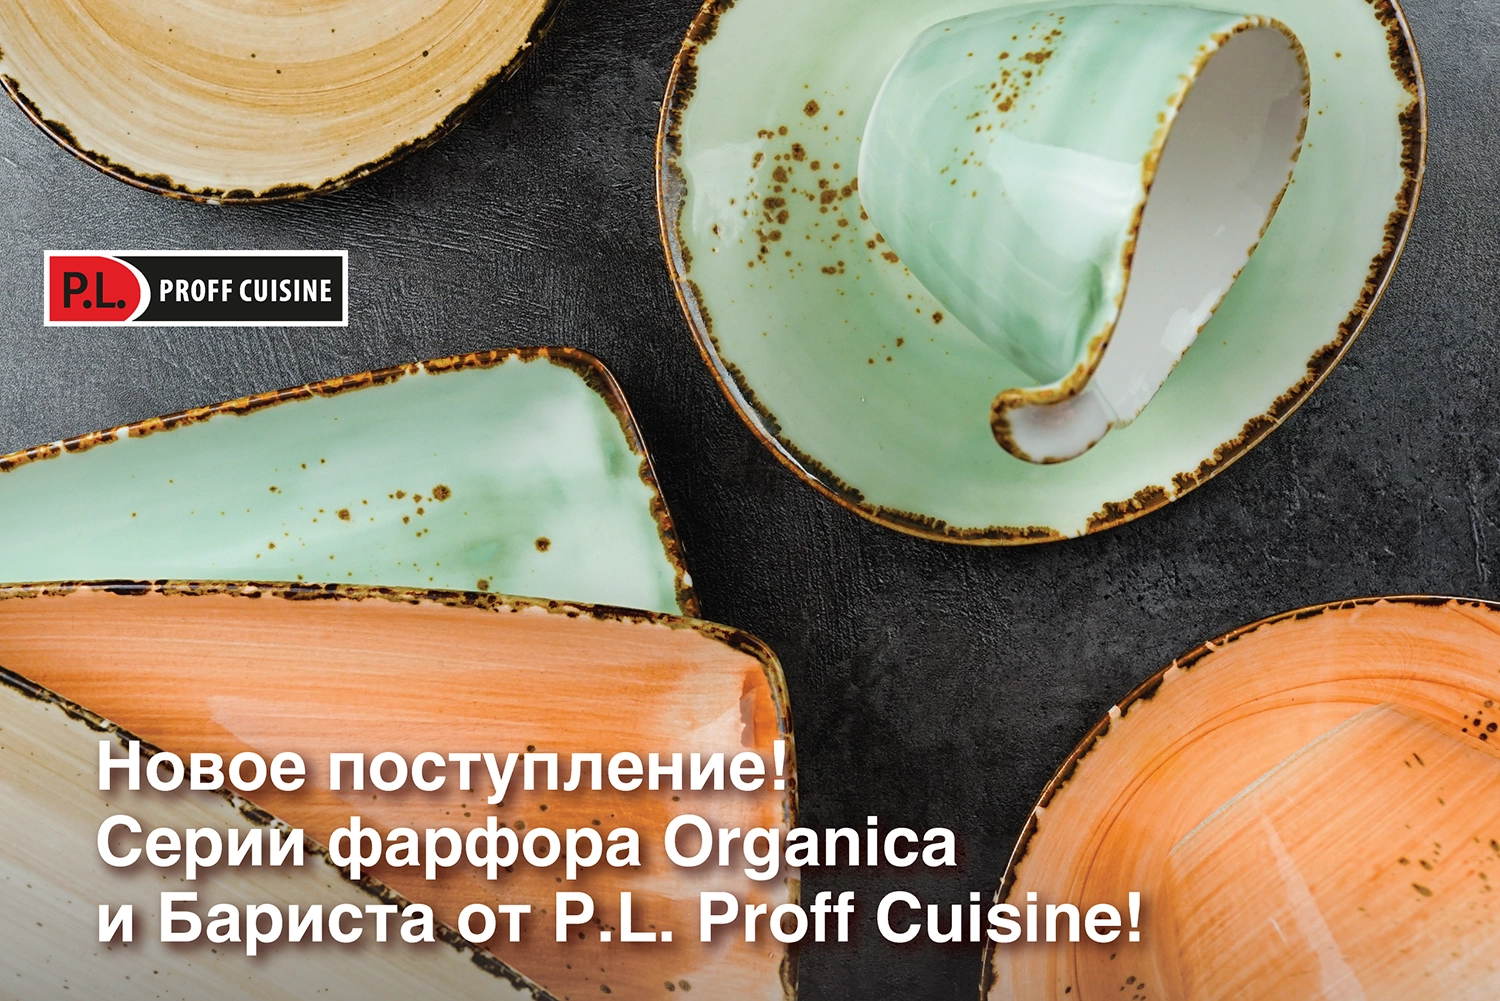 Серии фарфора Organica и Бариста от P.L. Proff Cuisine!